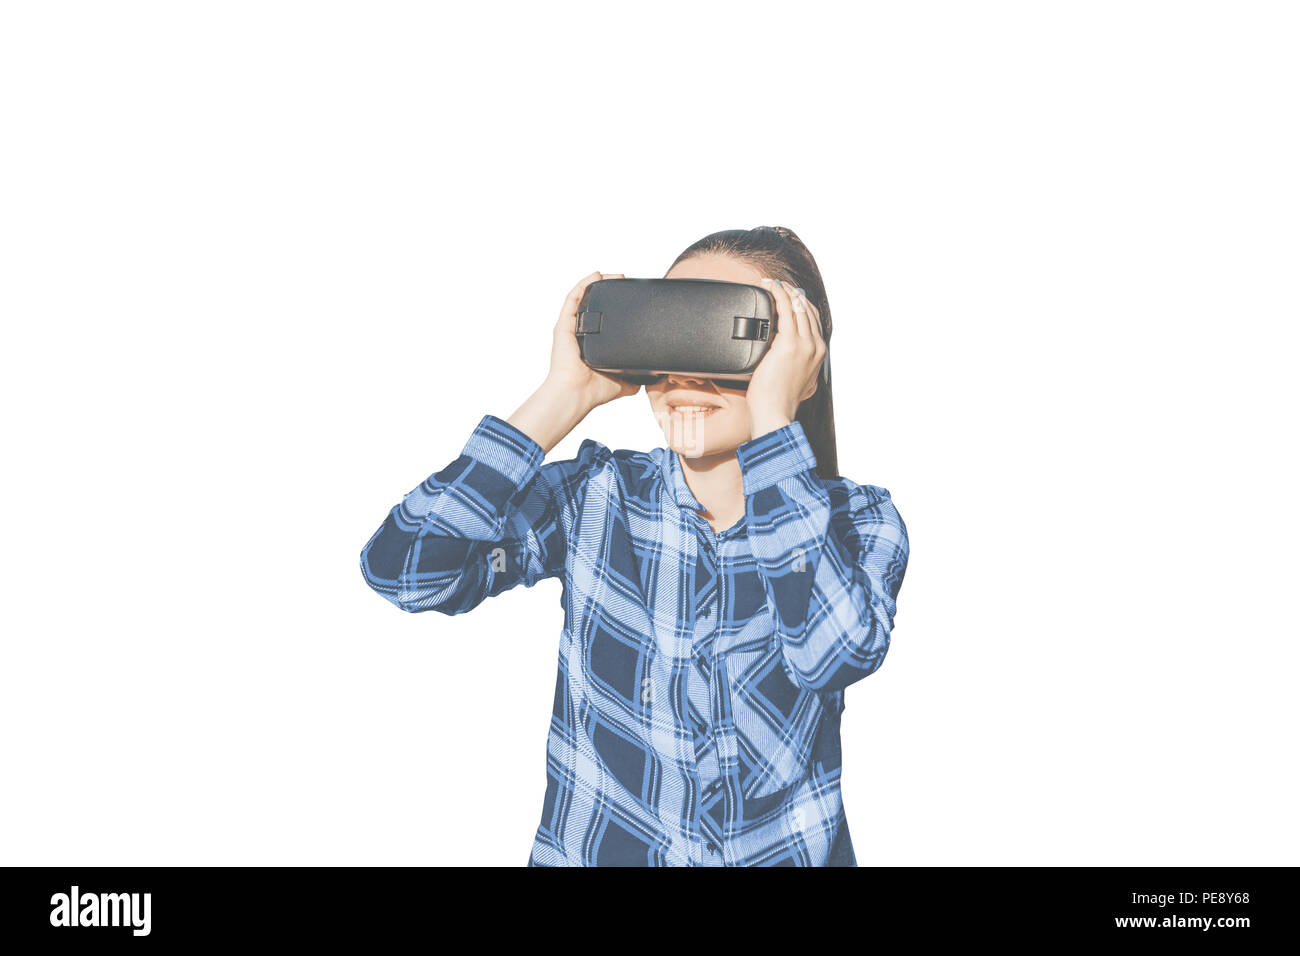 Die Frau mit der Brille der Virtuellen Realität. Zukunft Technik Konzept. Moderne bildgebende Technik. Stockfoto